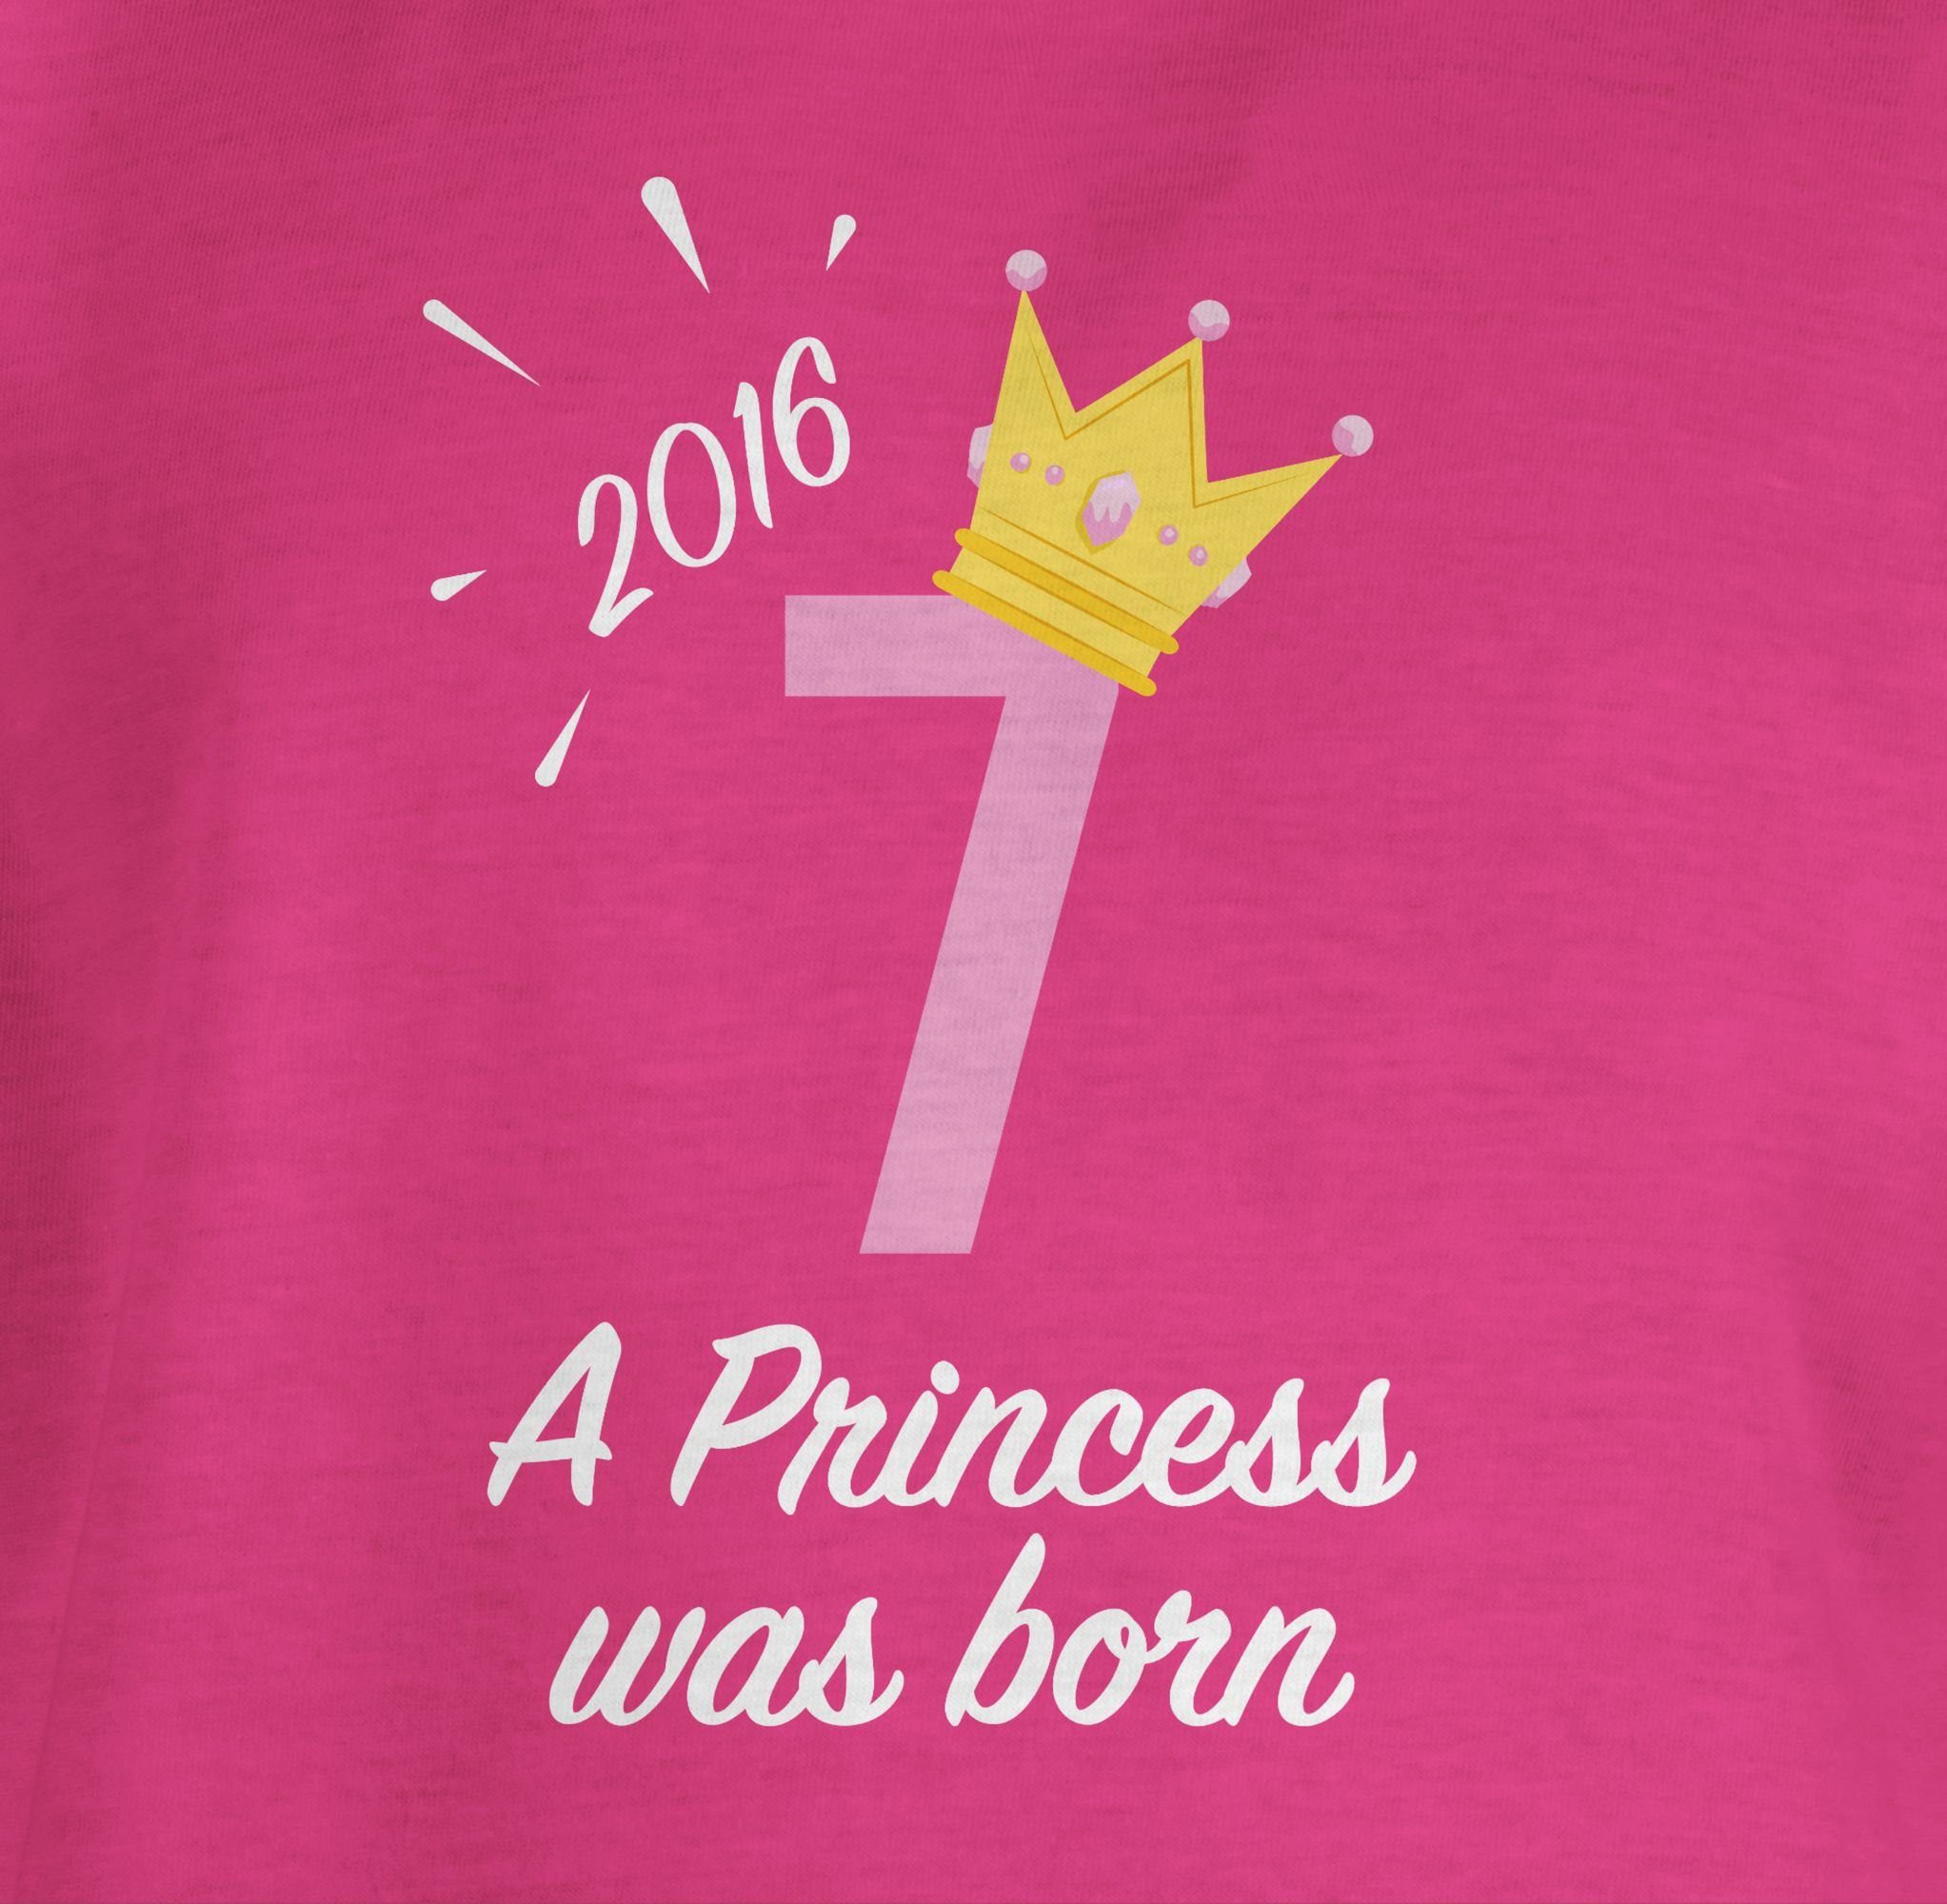 Mädchen 7. Fuchsia T-Shirt Geburtstag 1 Siebter 2016 Princess Shirtracer